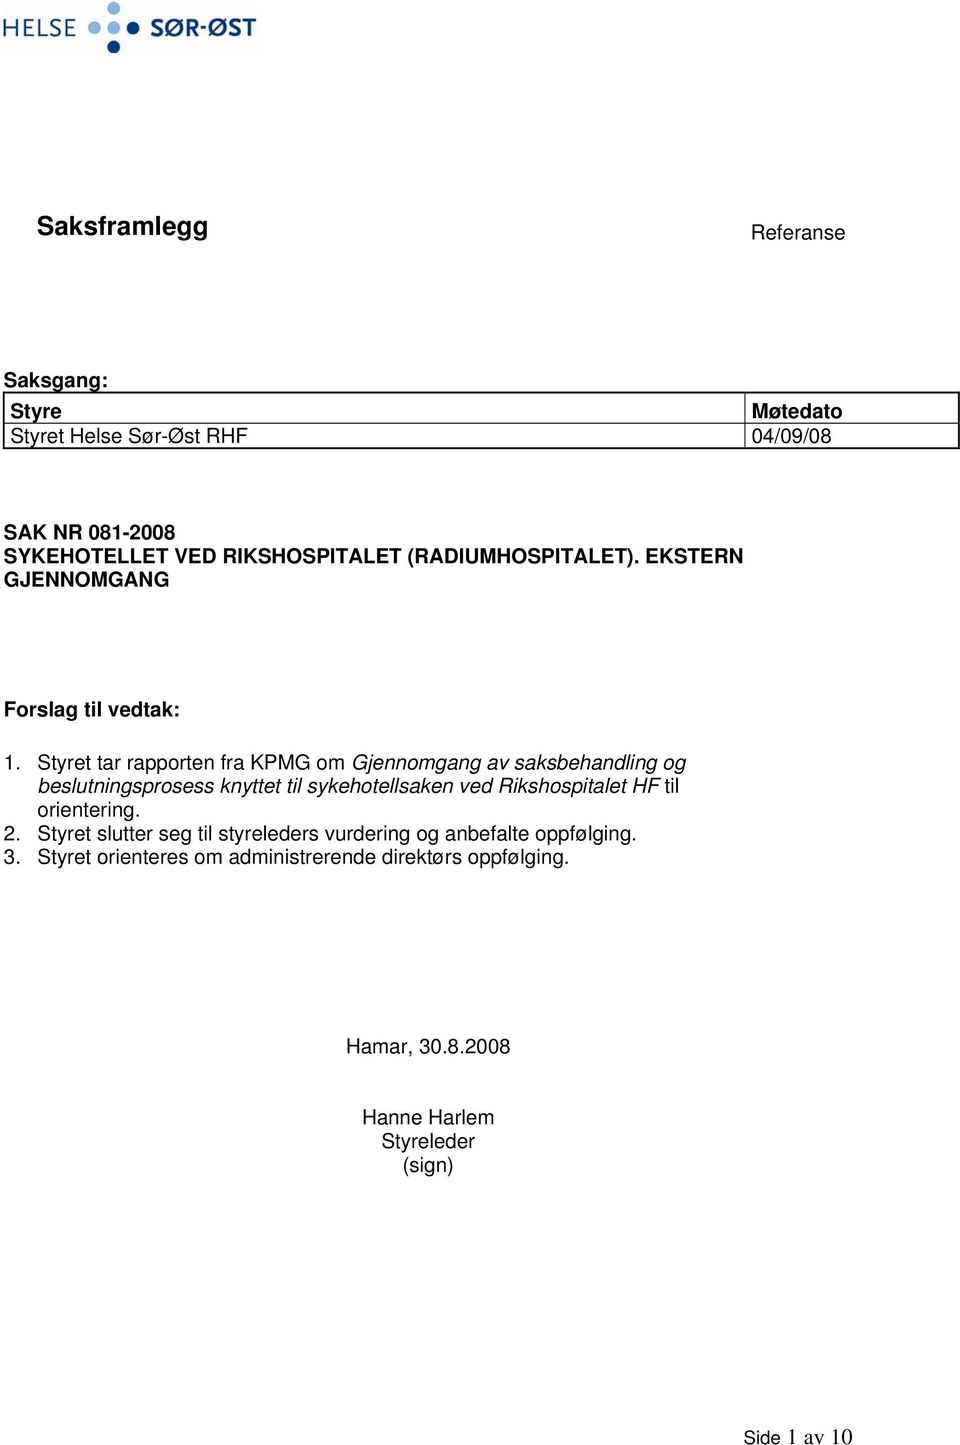 Styret tar rapporten fra KPMG om Gjennomgang av saksbehandling og beslutningsprosess knyttet til sykehotellsaken ved Rikshospitalet HF